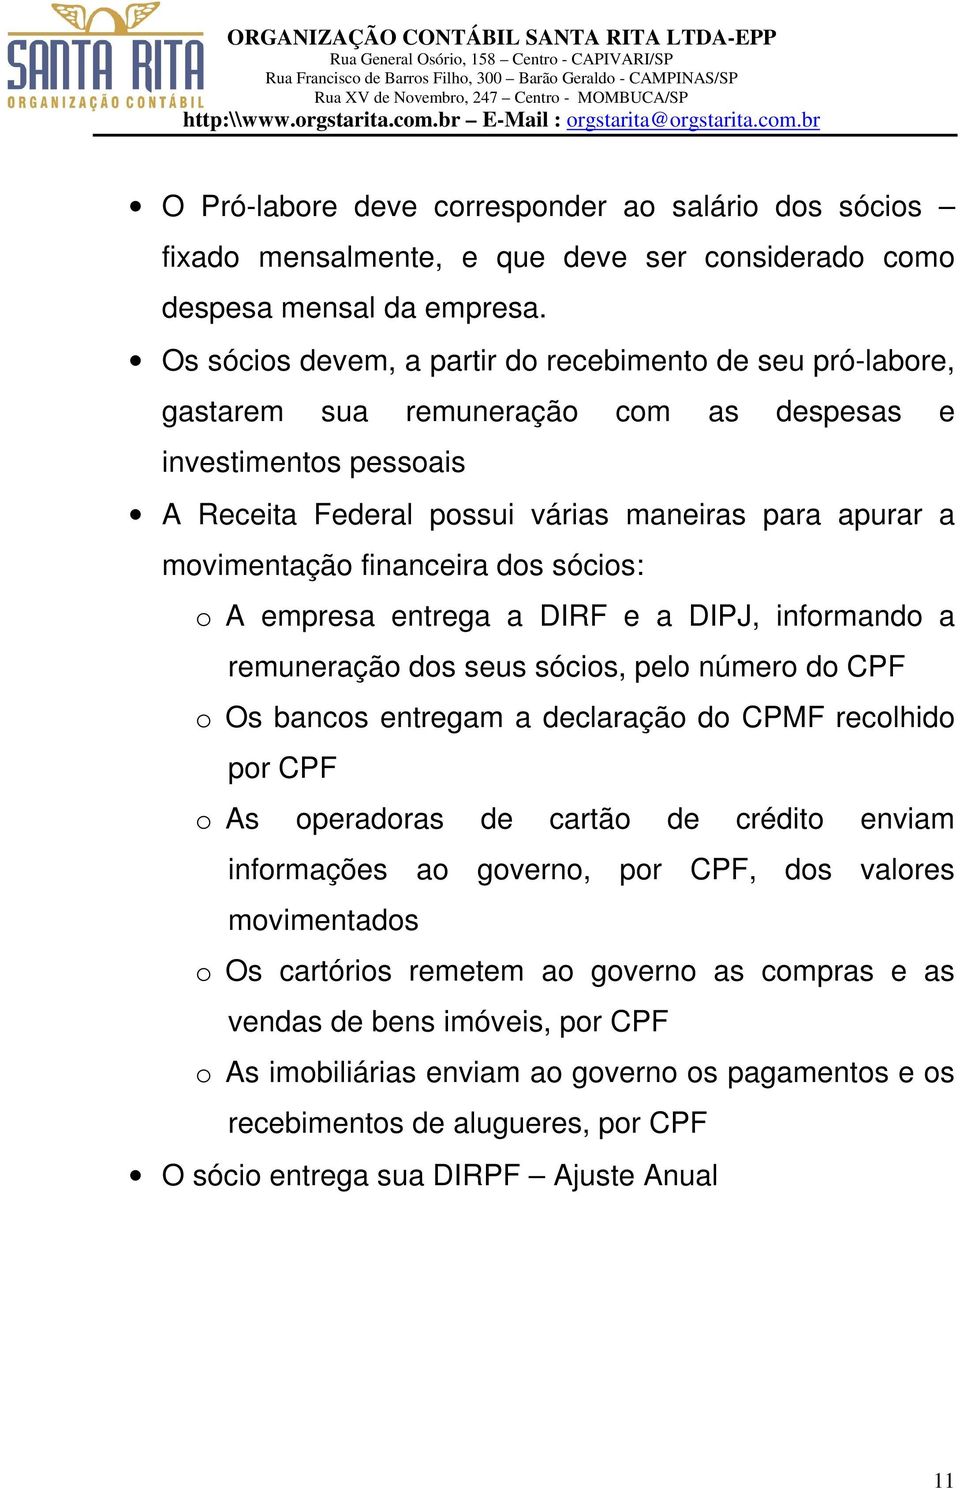 financeira dos sócios: o A empresa entrega a DIRF e a DIPJ, informando a remuneração dos seus sócios, pelo número do CPF o Os bancos entregam a declaração do CPMF recolhido por CPF o As operadoras de